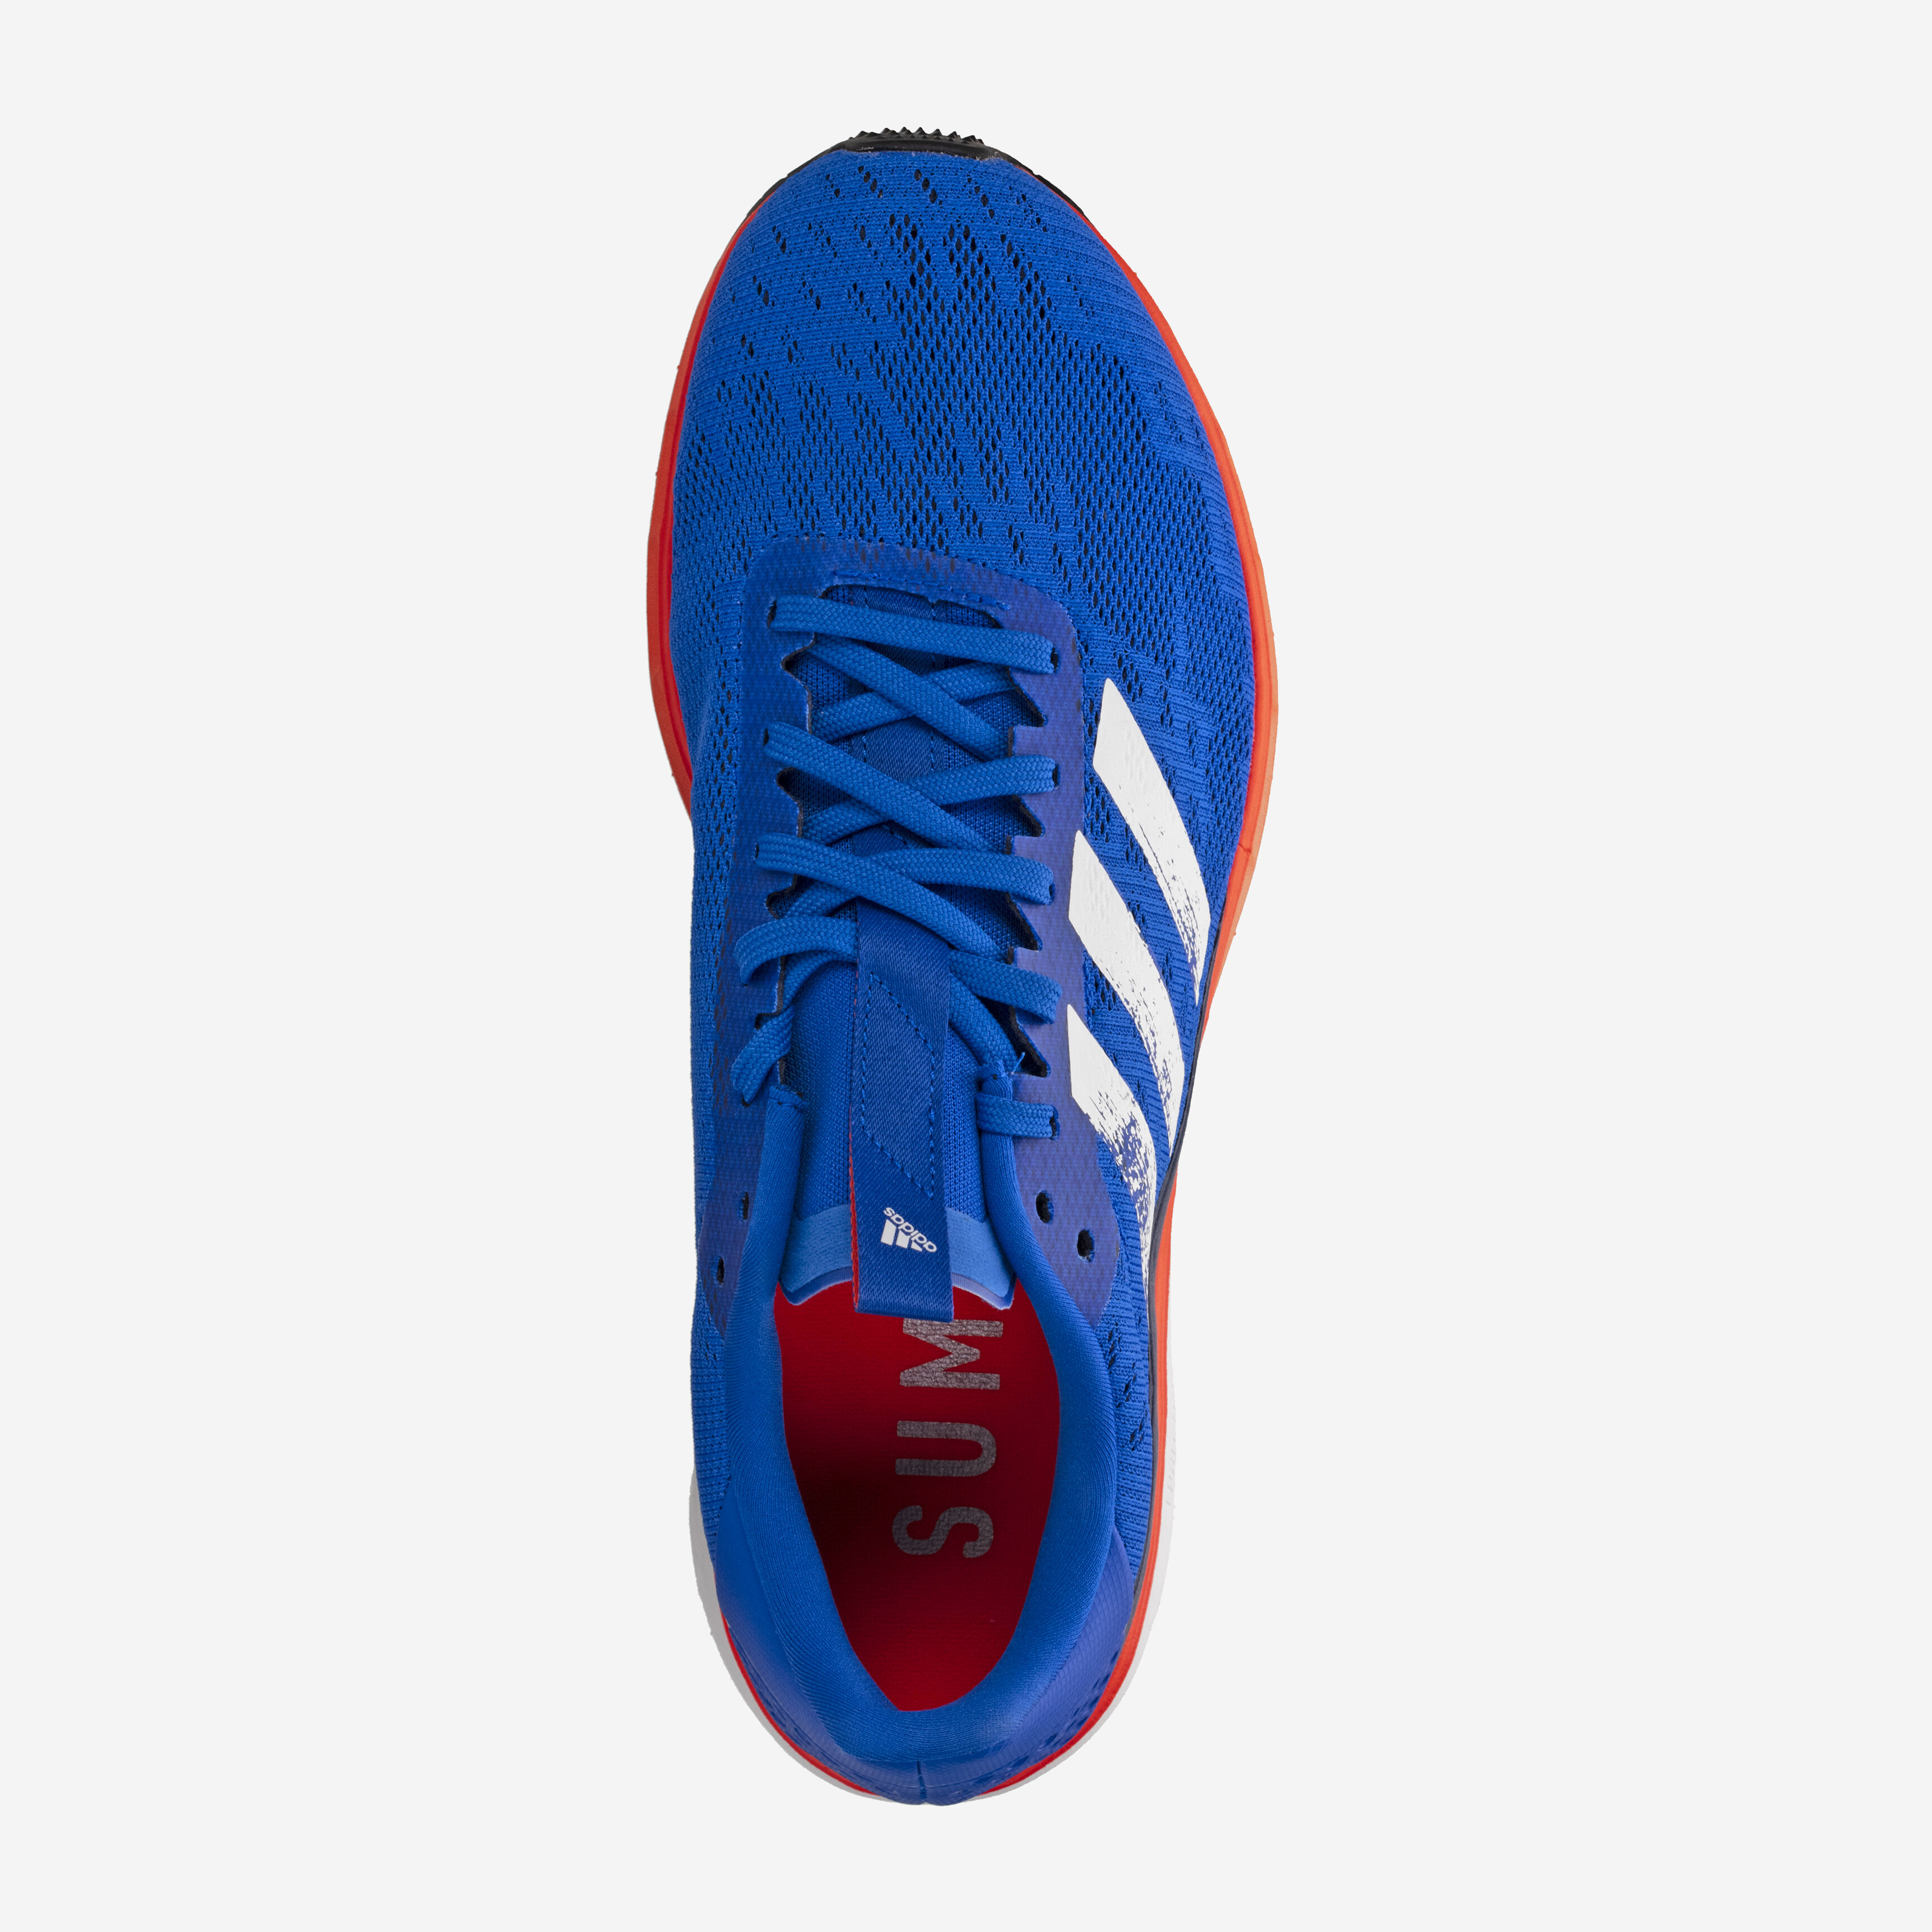 Adidas Sl 20 RUNKD online running store